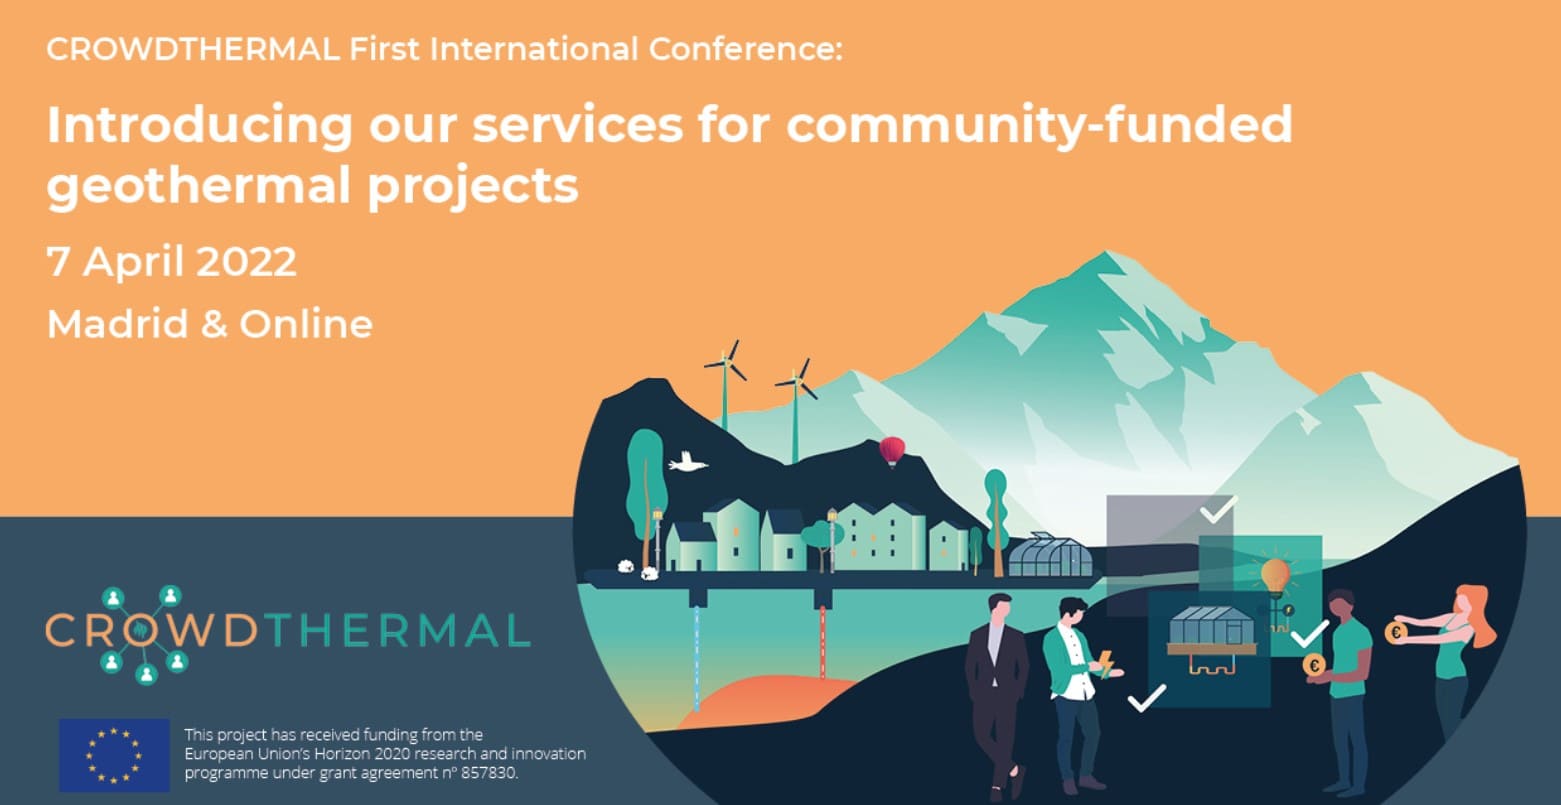 Conferência Internacional CrowdThermal_Apresentando nossos serviços para projetos feotérmicos financiados pela comunidade - CrowdfundingHub